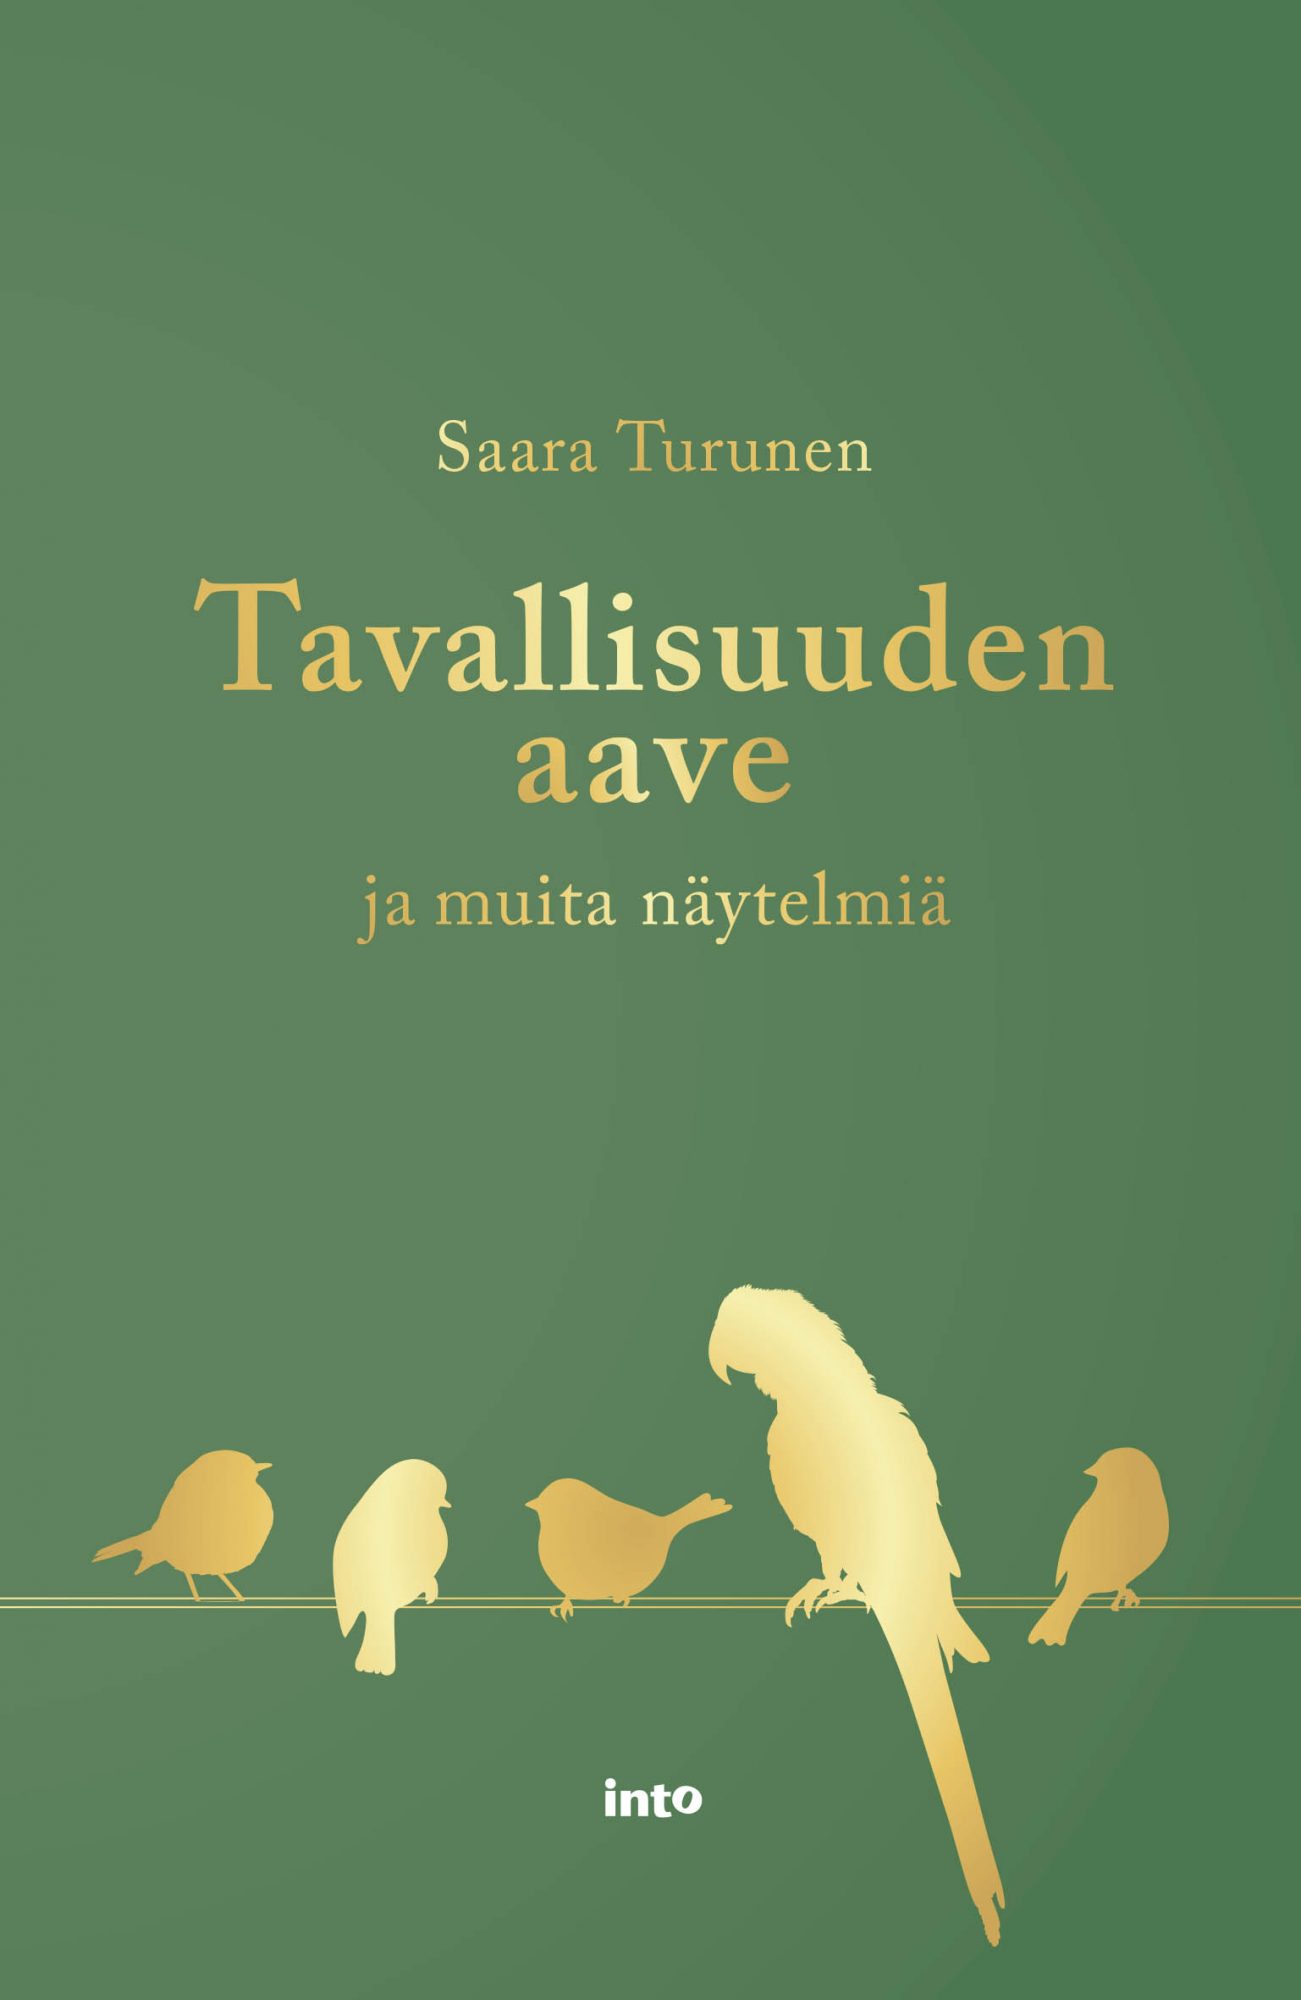 Saara Turunen, Maria Säkö: Tavallisuuden aave ja muita näytelmiä (Finnish language, 2019)